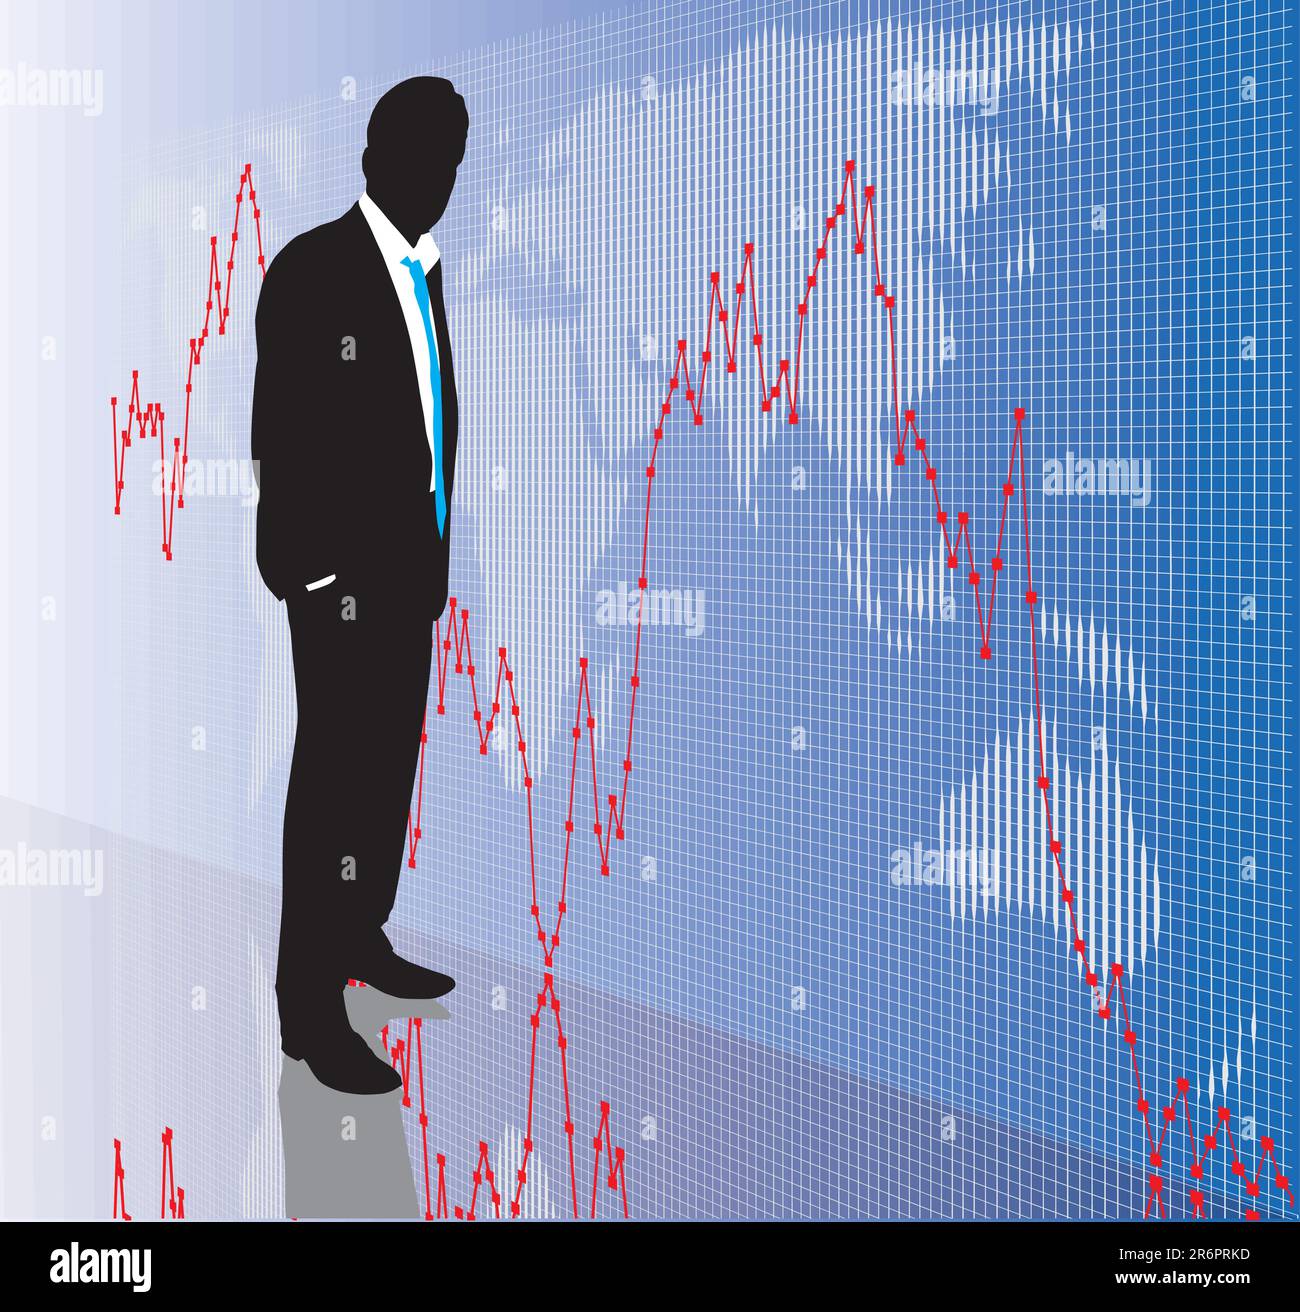 Bourse mondiale, marché boursier, DAX, Dow Jones Illustration de Vecteur